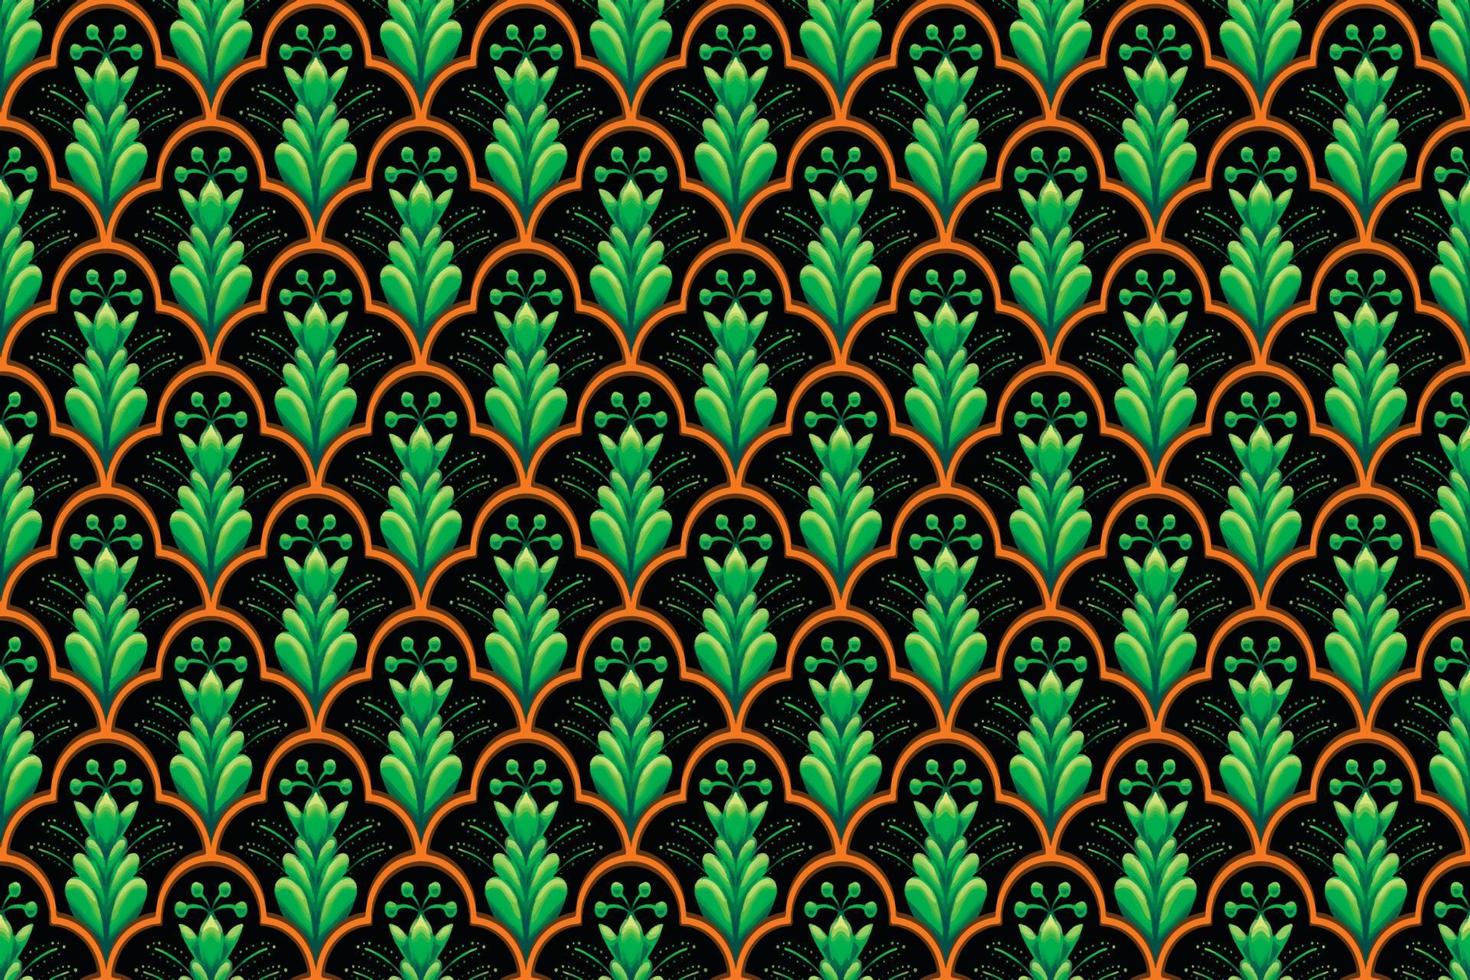 grüne orangefarbene Blume auf Schwarz. geometrisches ethnisches orientalisches Muster traditionelles Design für Hintergrund, Teppich, Tapete, Kleidung, Verpackung, Batik, Stoff, Vektorillustrationsstickereiart vektor